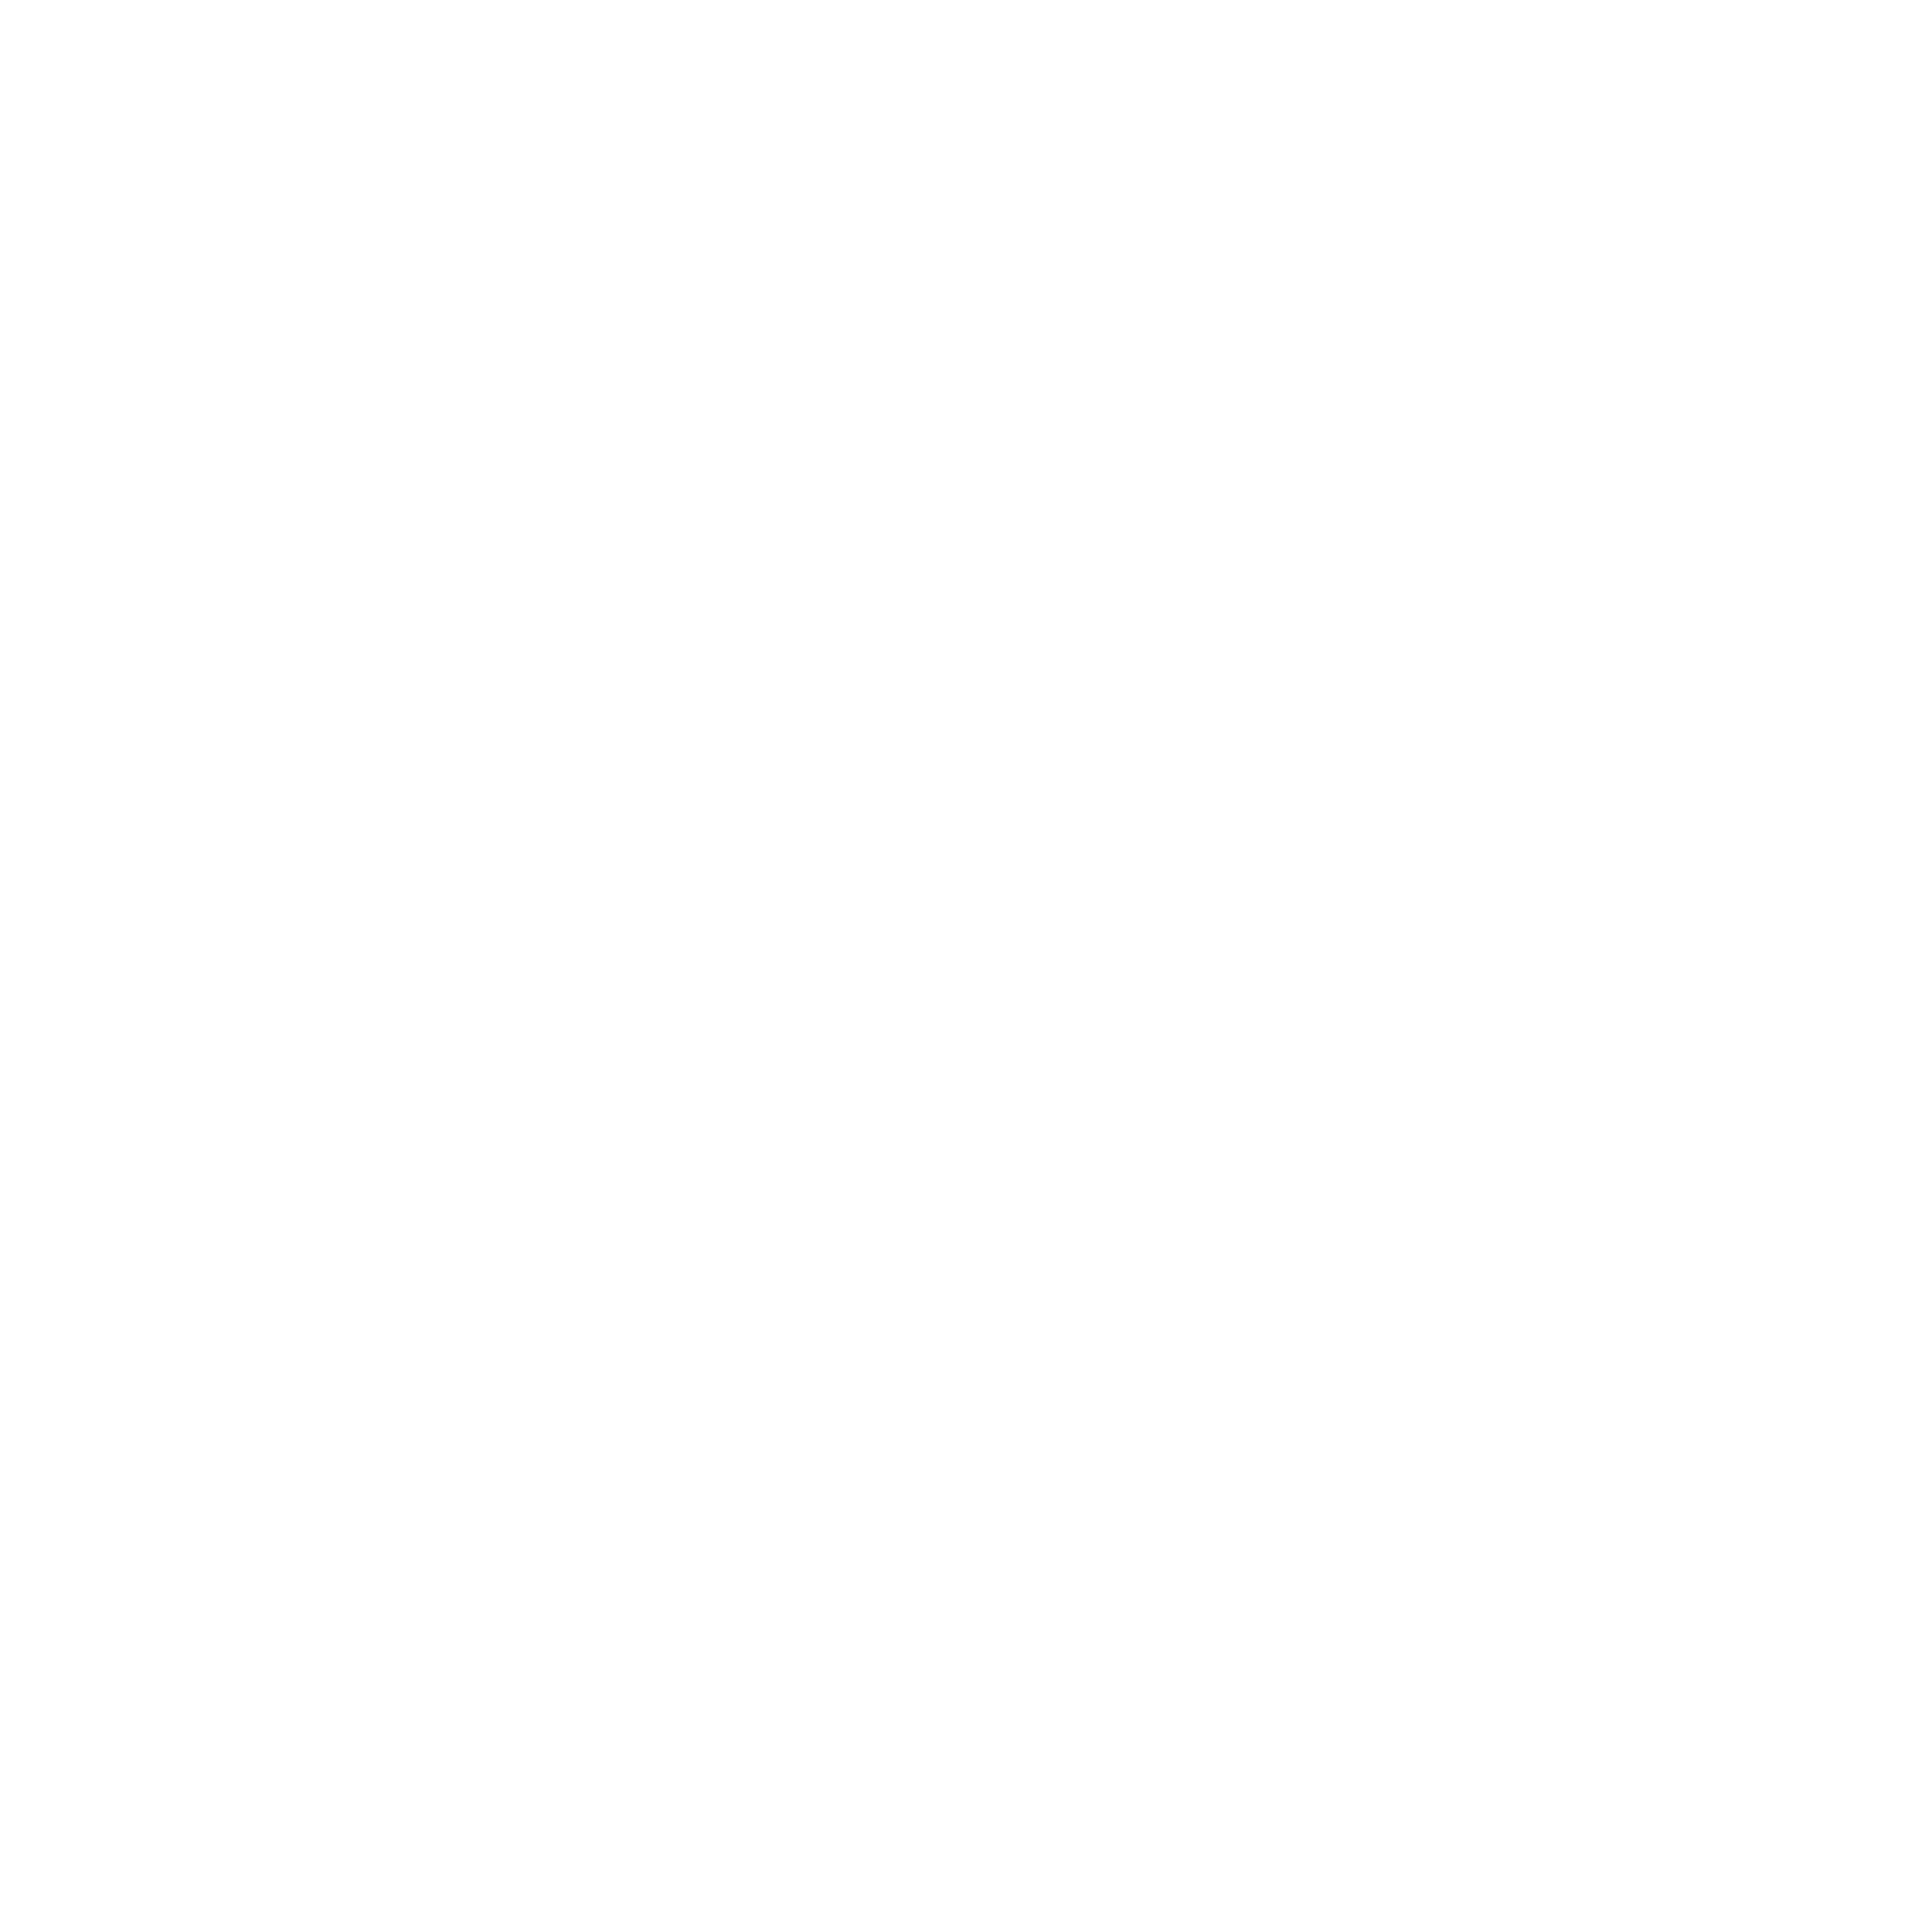 Made For Me logo